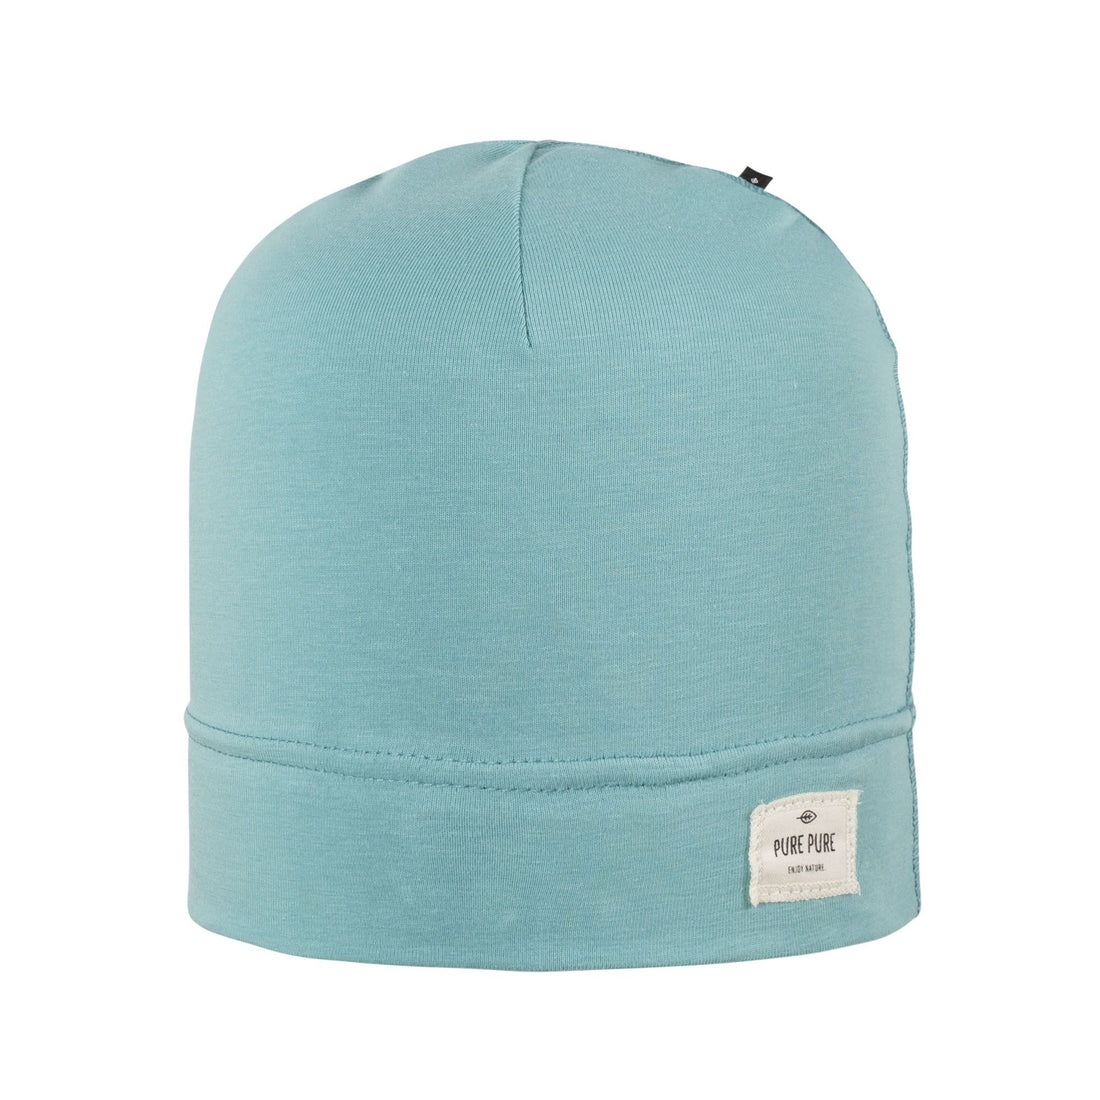 Weiche Beanie Mütze aus Bio-Baumwolle, hellblau von Pure Pure für Mädchen und Jungen